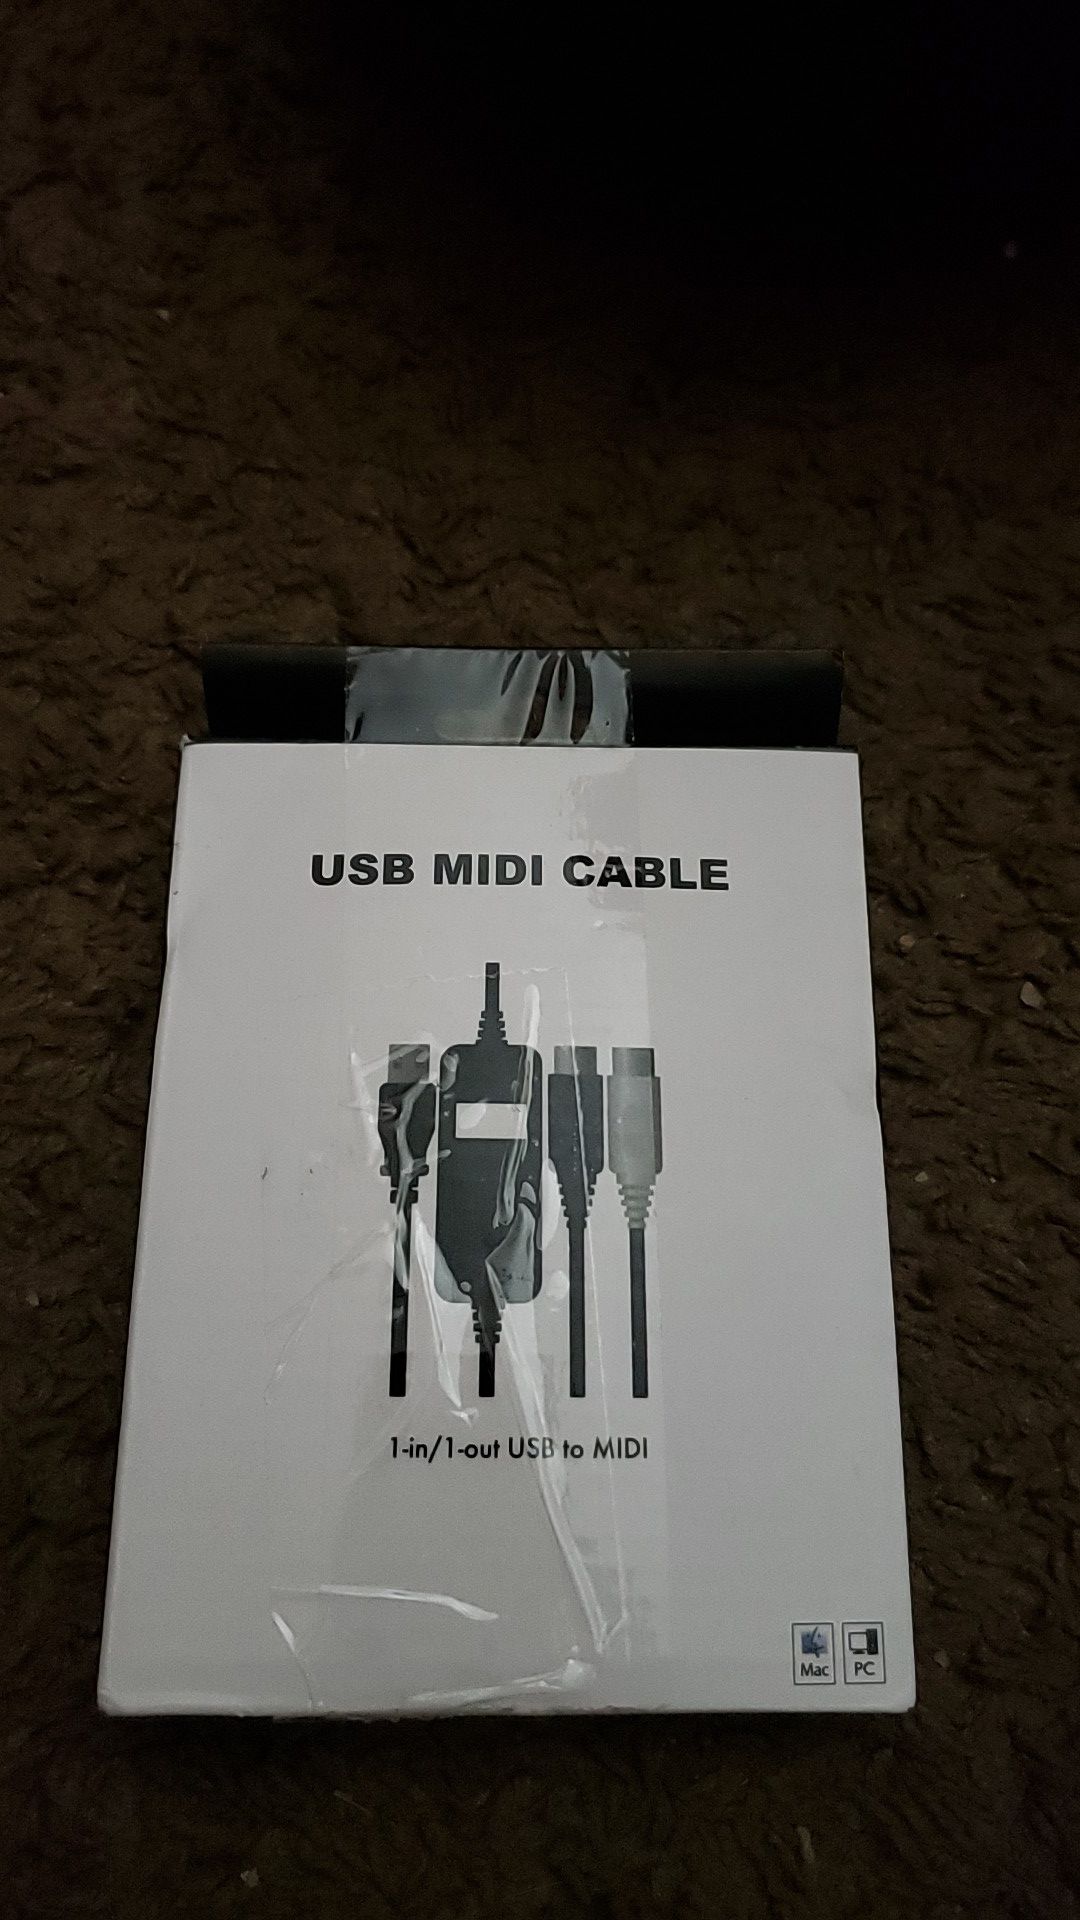 USB midi cable